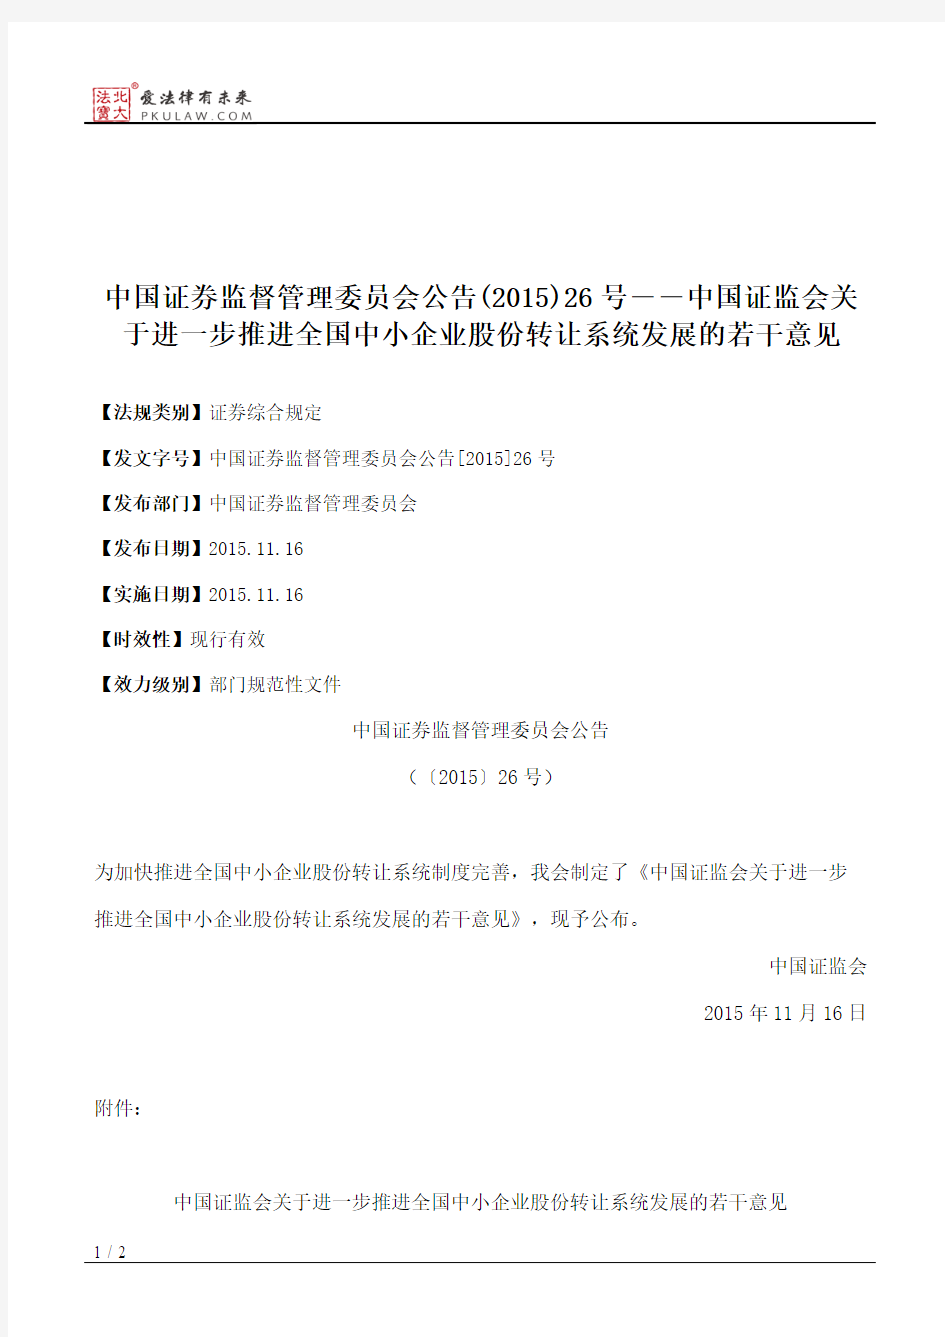 中国证券监督管理委员会公告(2015)26号――中国证监会关于进一步推